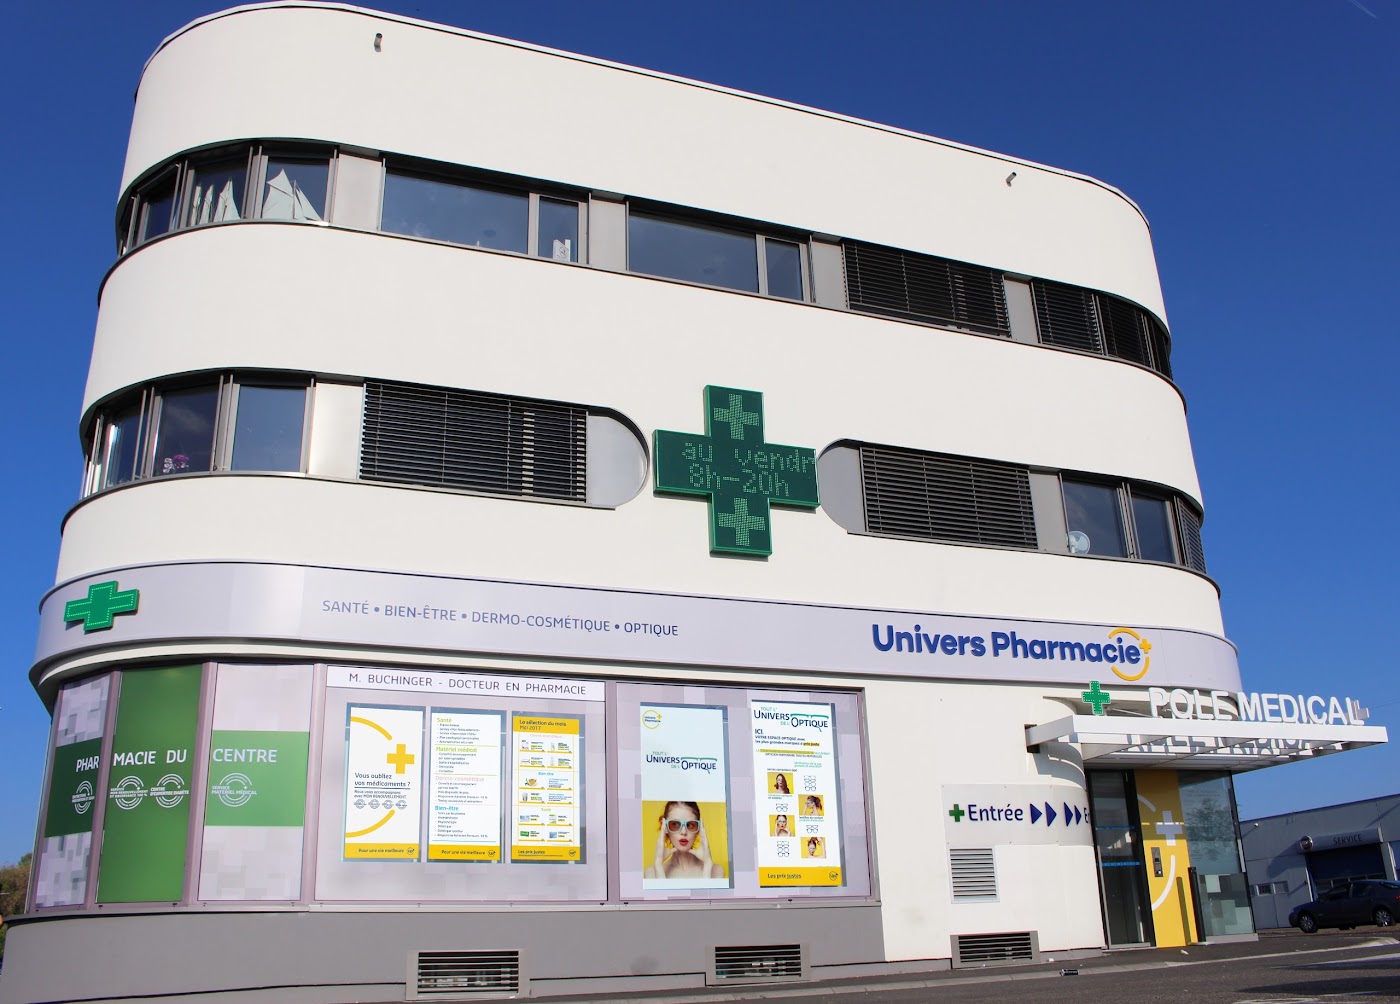 Pharmacie du Centre Colmar - Univers Pharmacie